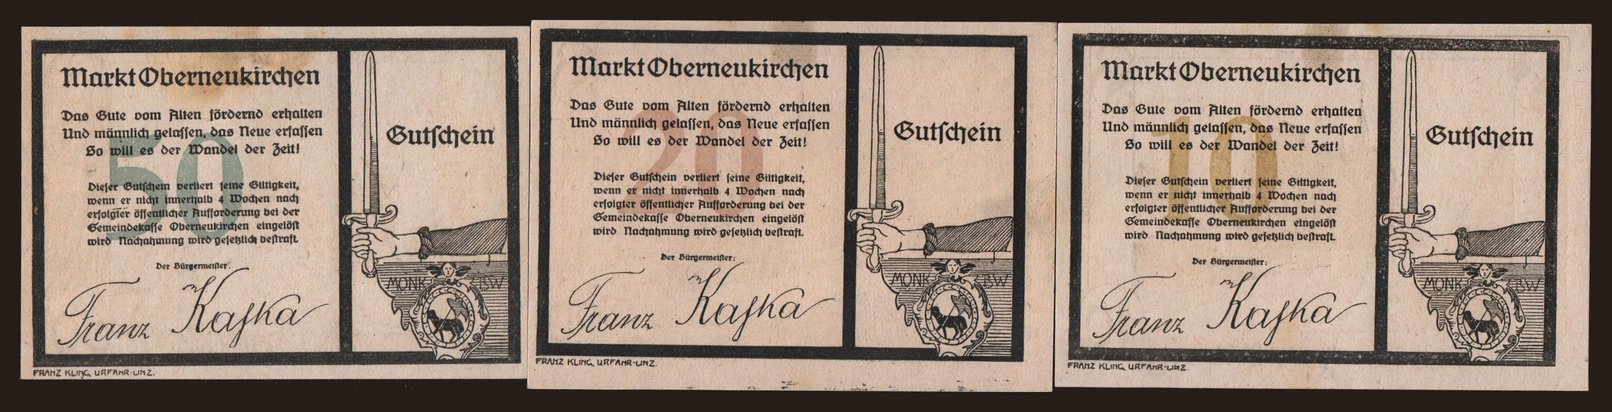 Oberneukirchen, 10, 20, 50 Heller, 1920